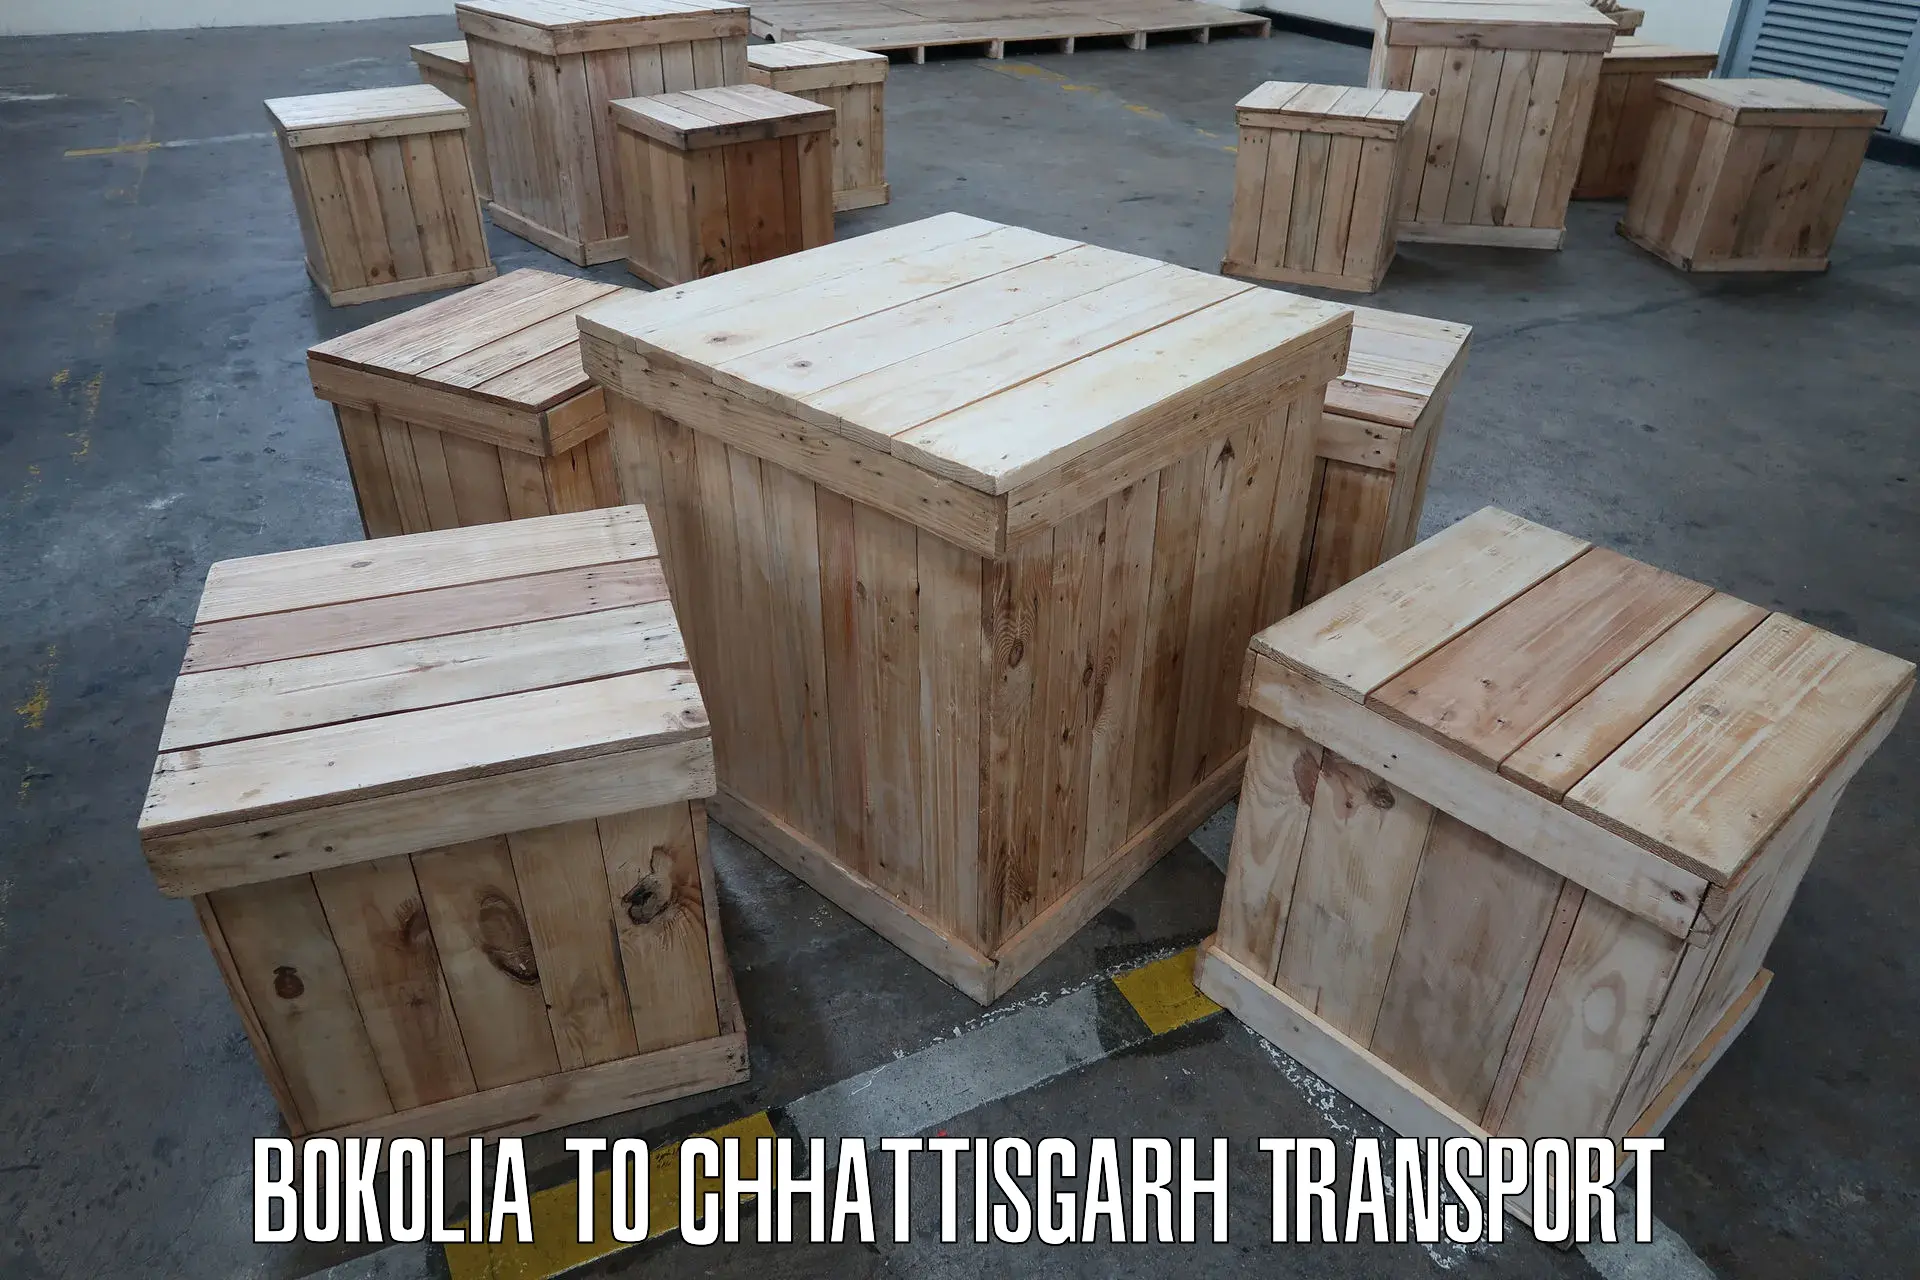 Two wheeler transport services Bokolia to Chhattisgarh